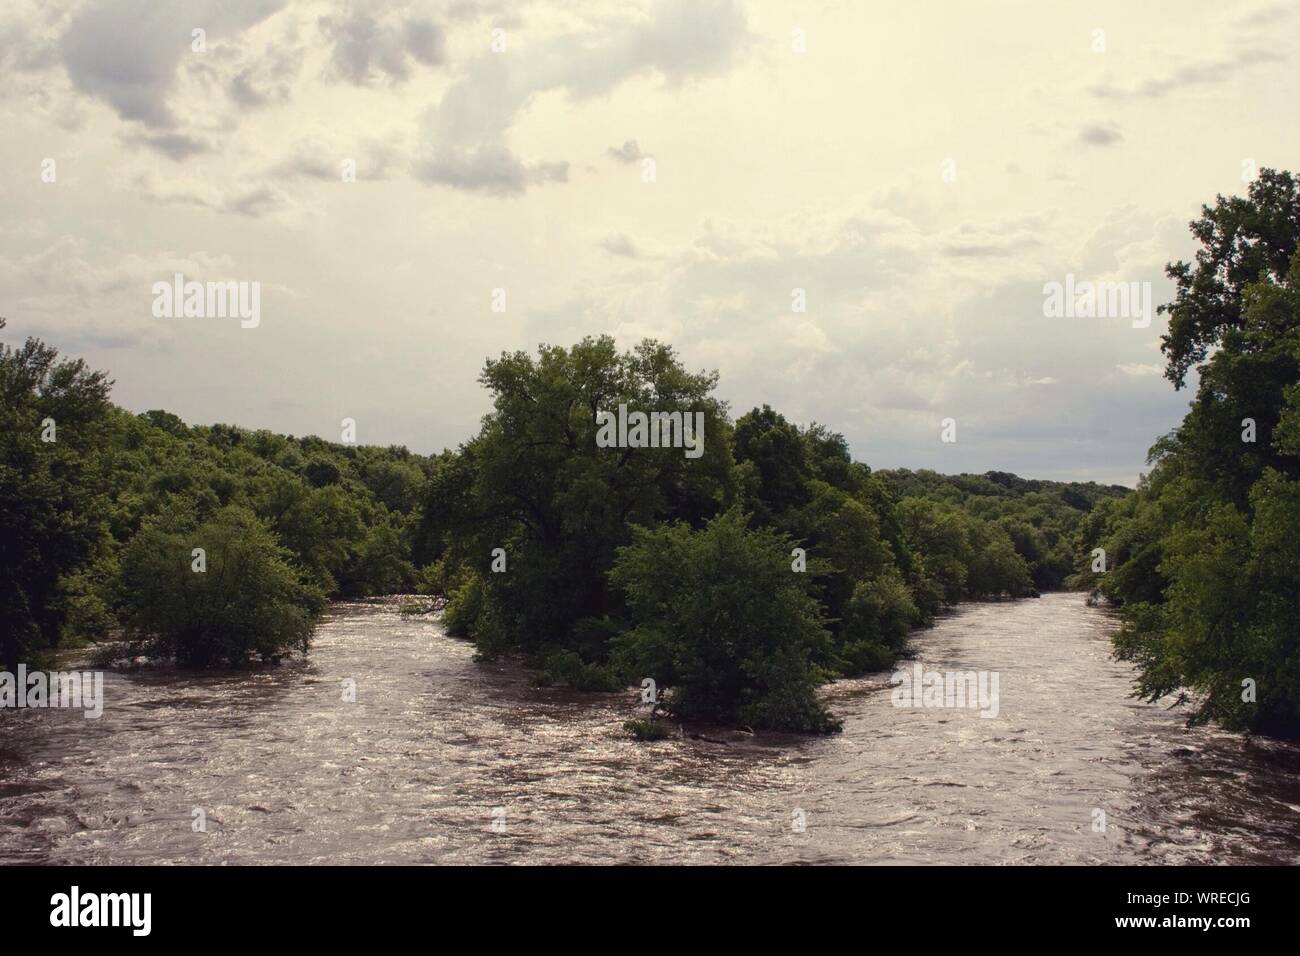 Árboles en río inundado contra el cielo nublado Foto de stock